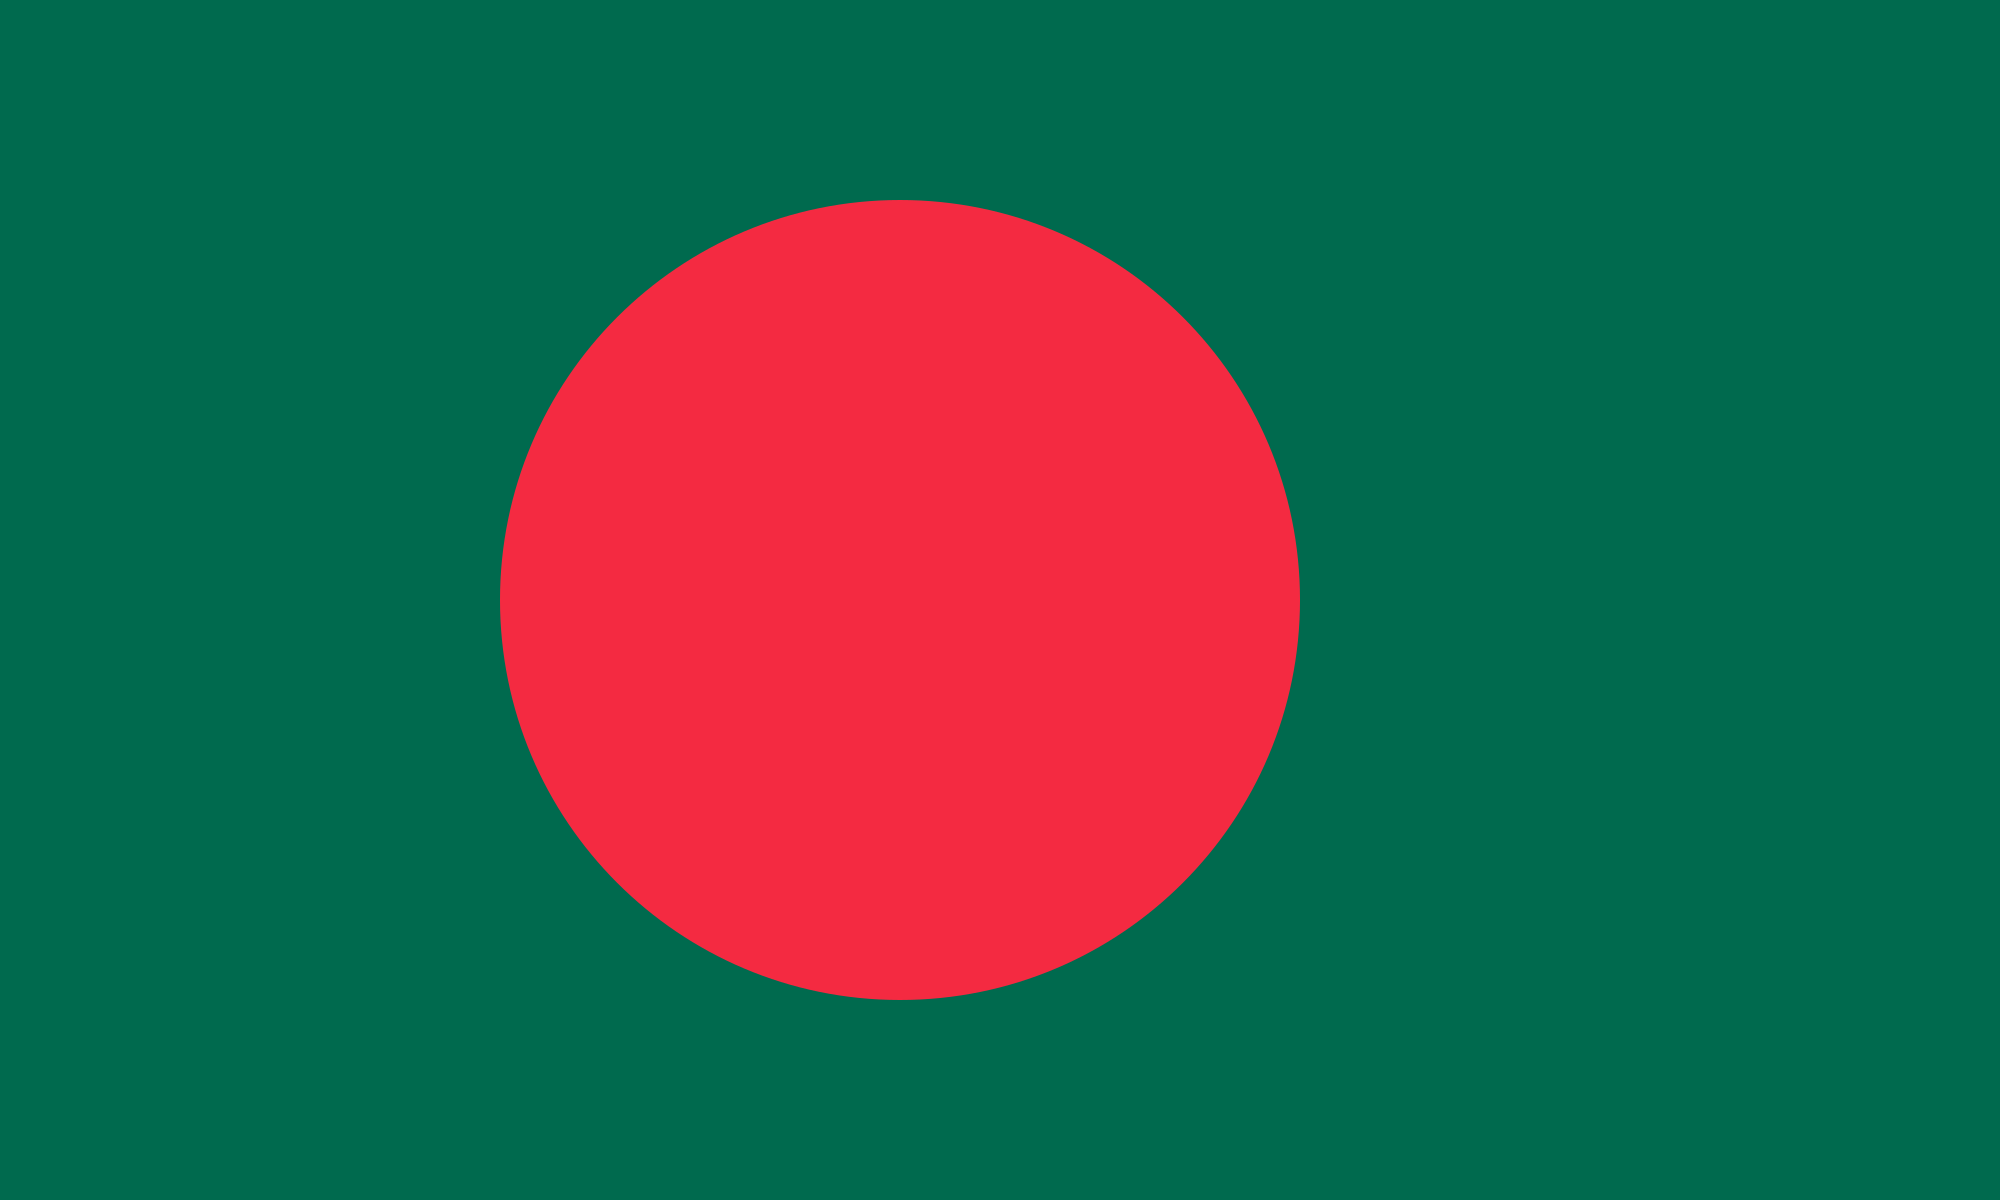 National Flag Of Bangladesh